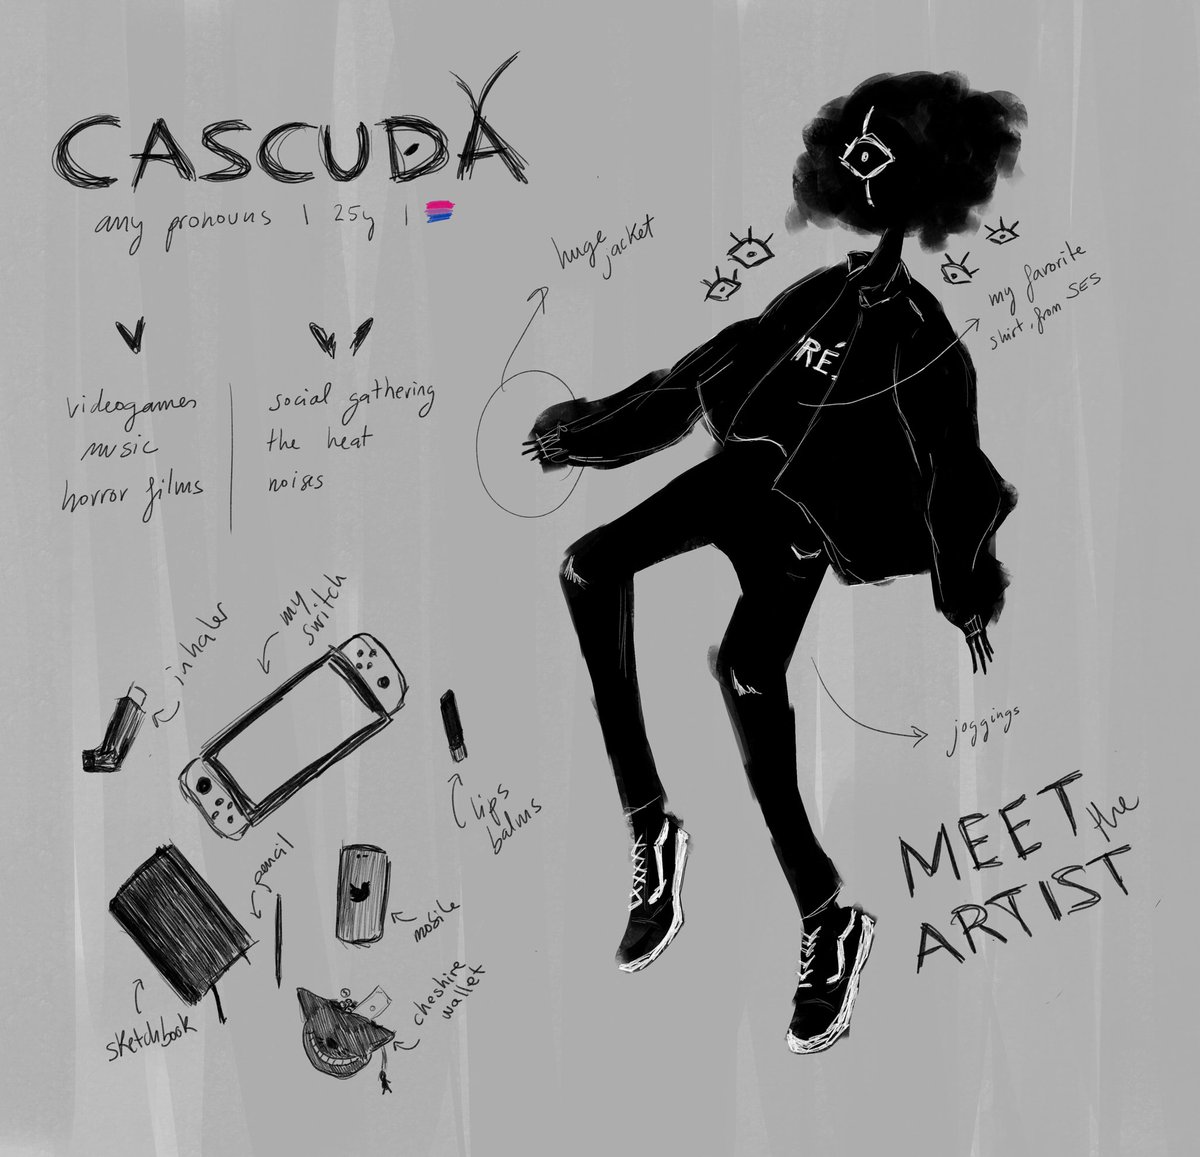 I'm Cascuda, nice to meet you!